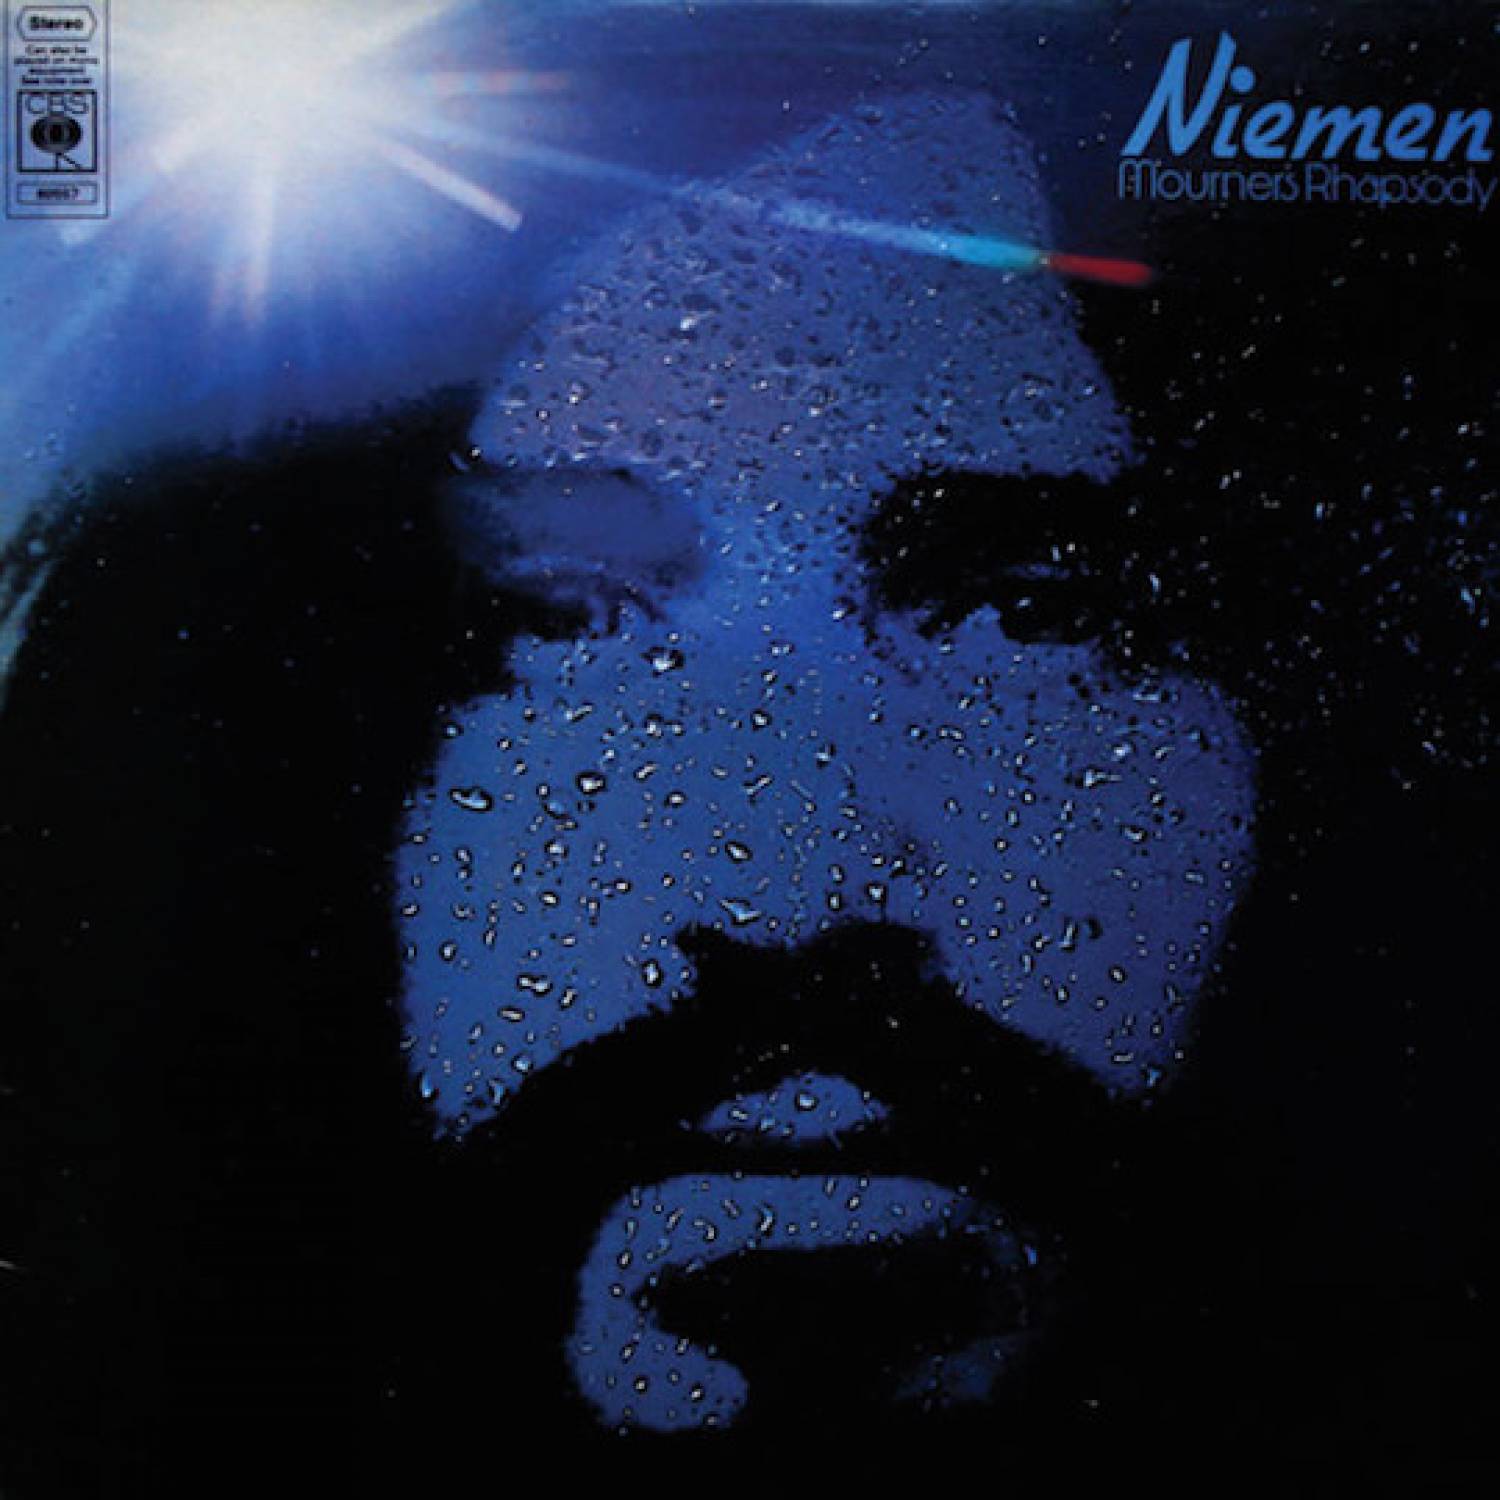 Czesław Niemen - Mourner's Rhapsody (1975)